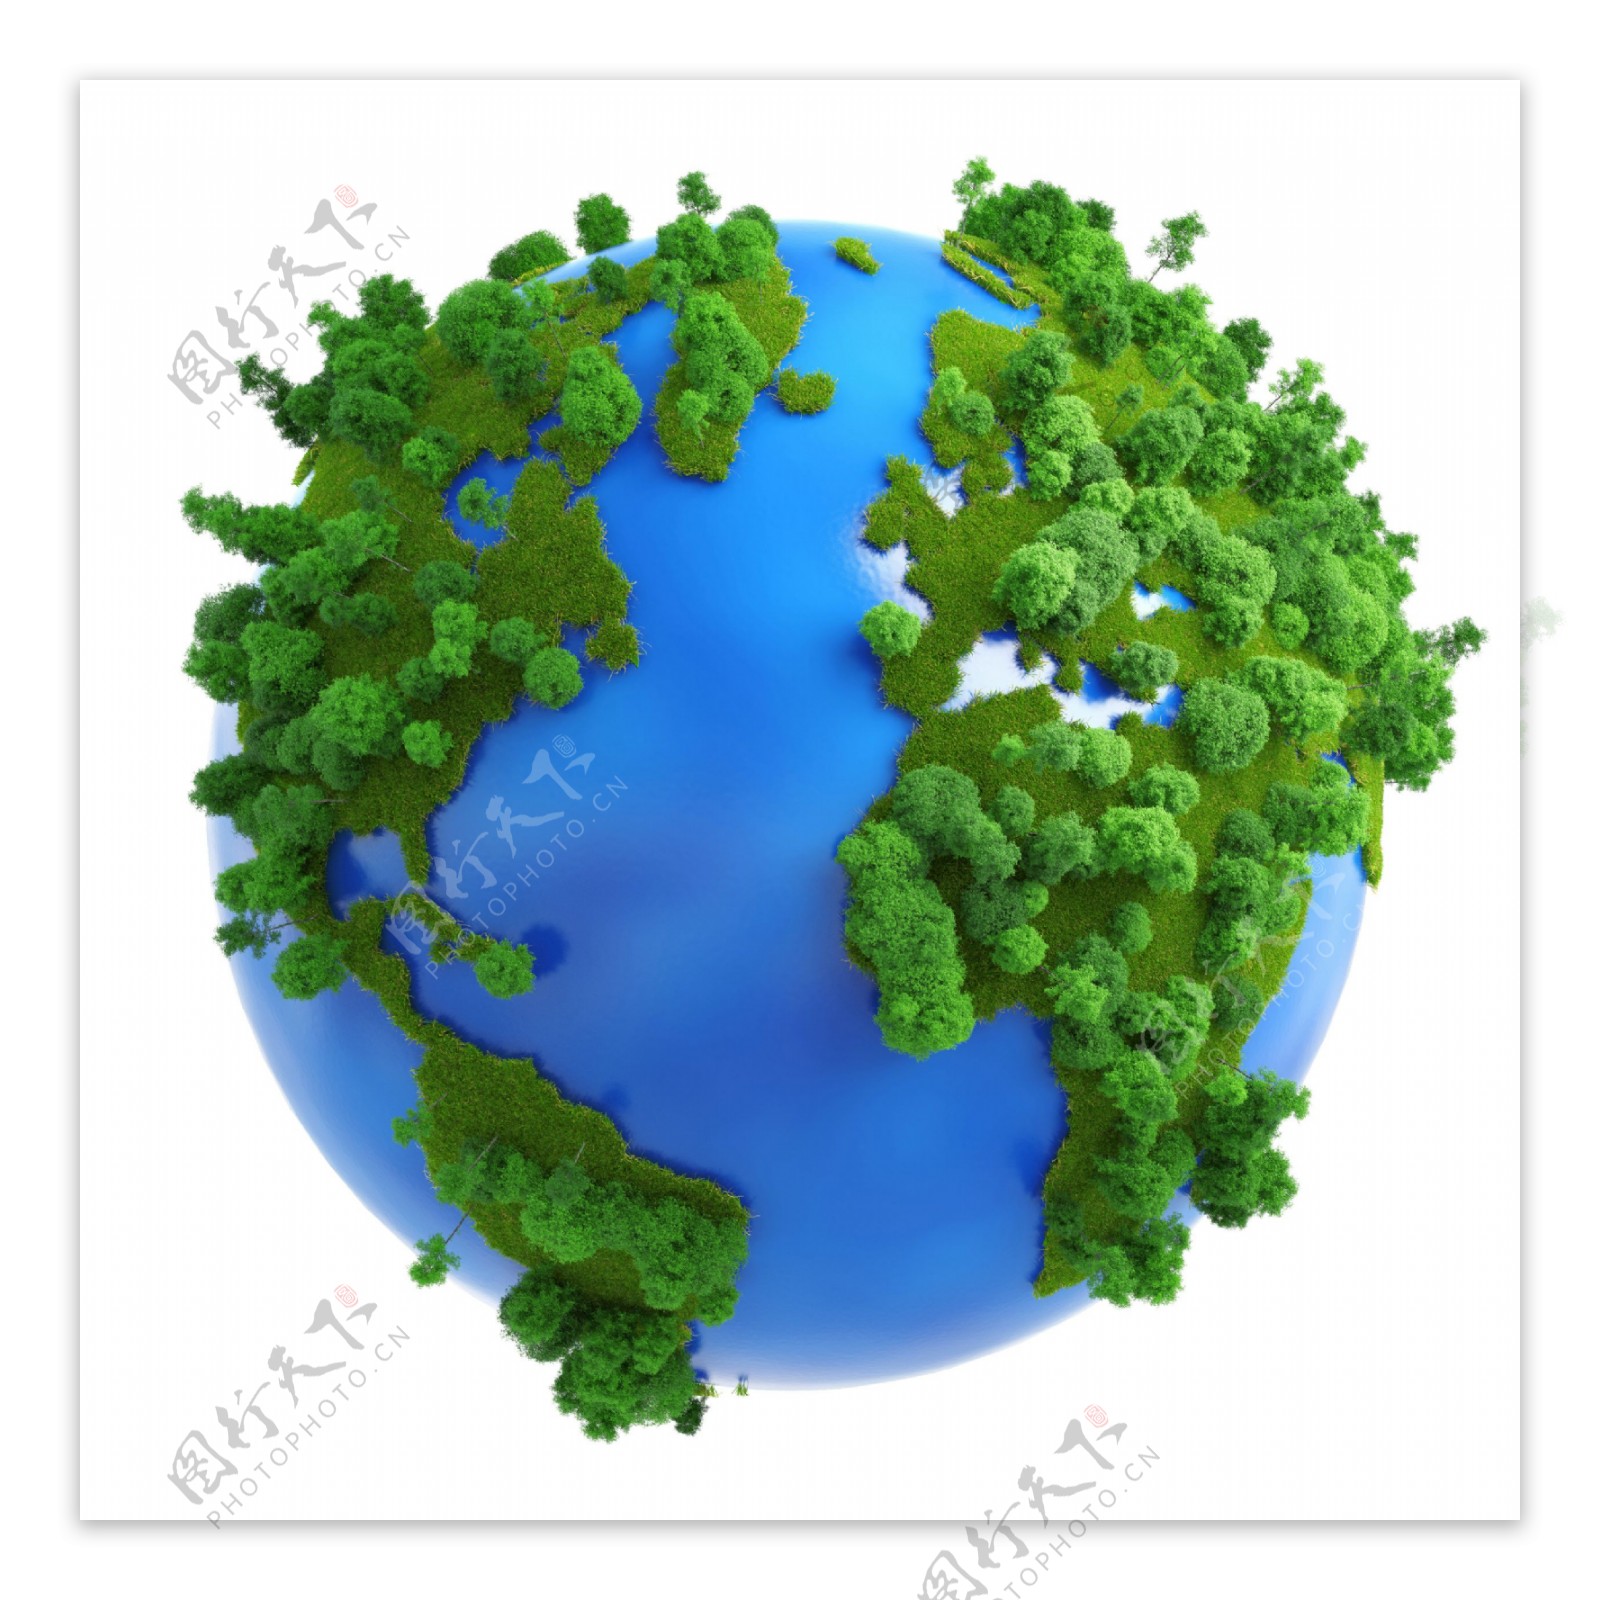 环保宣传地球模型图片